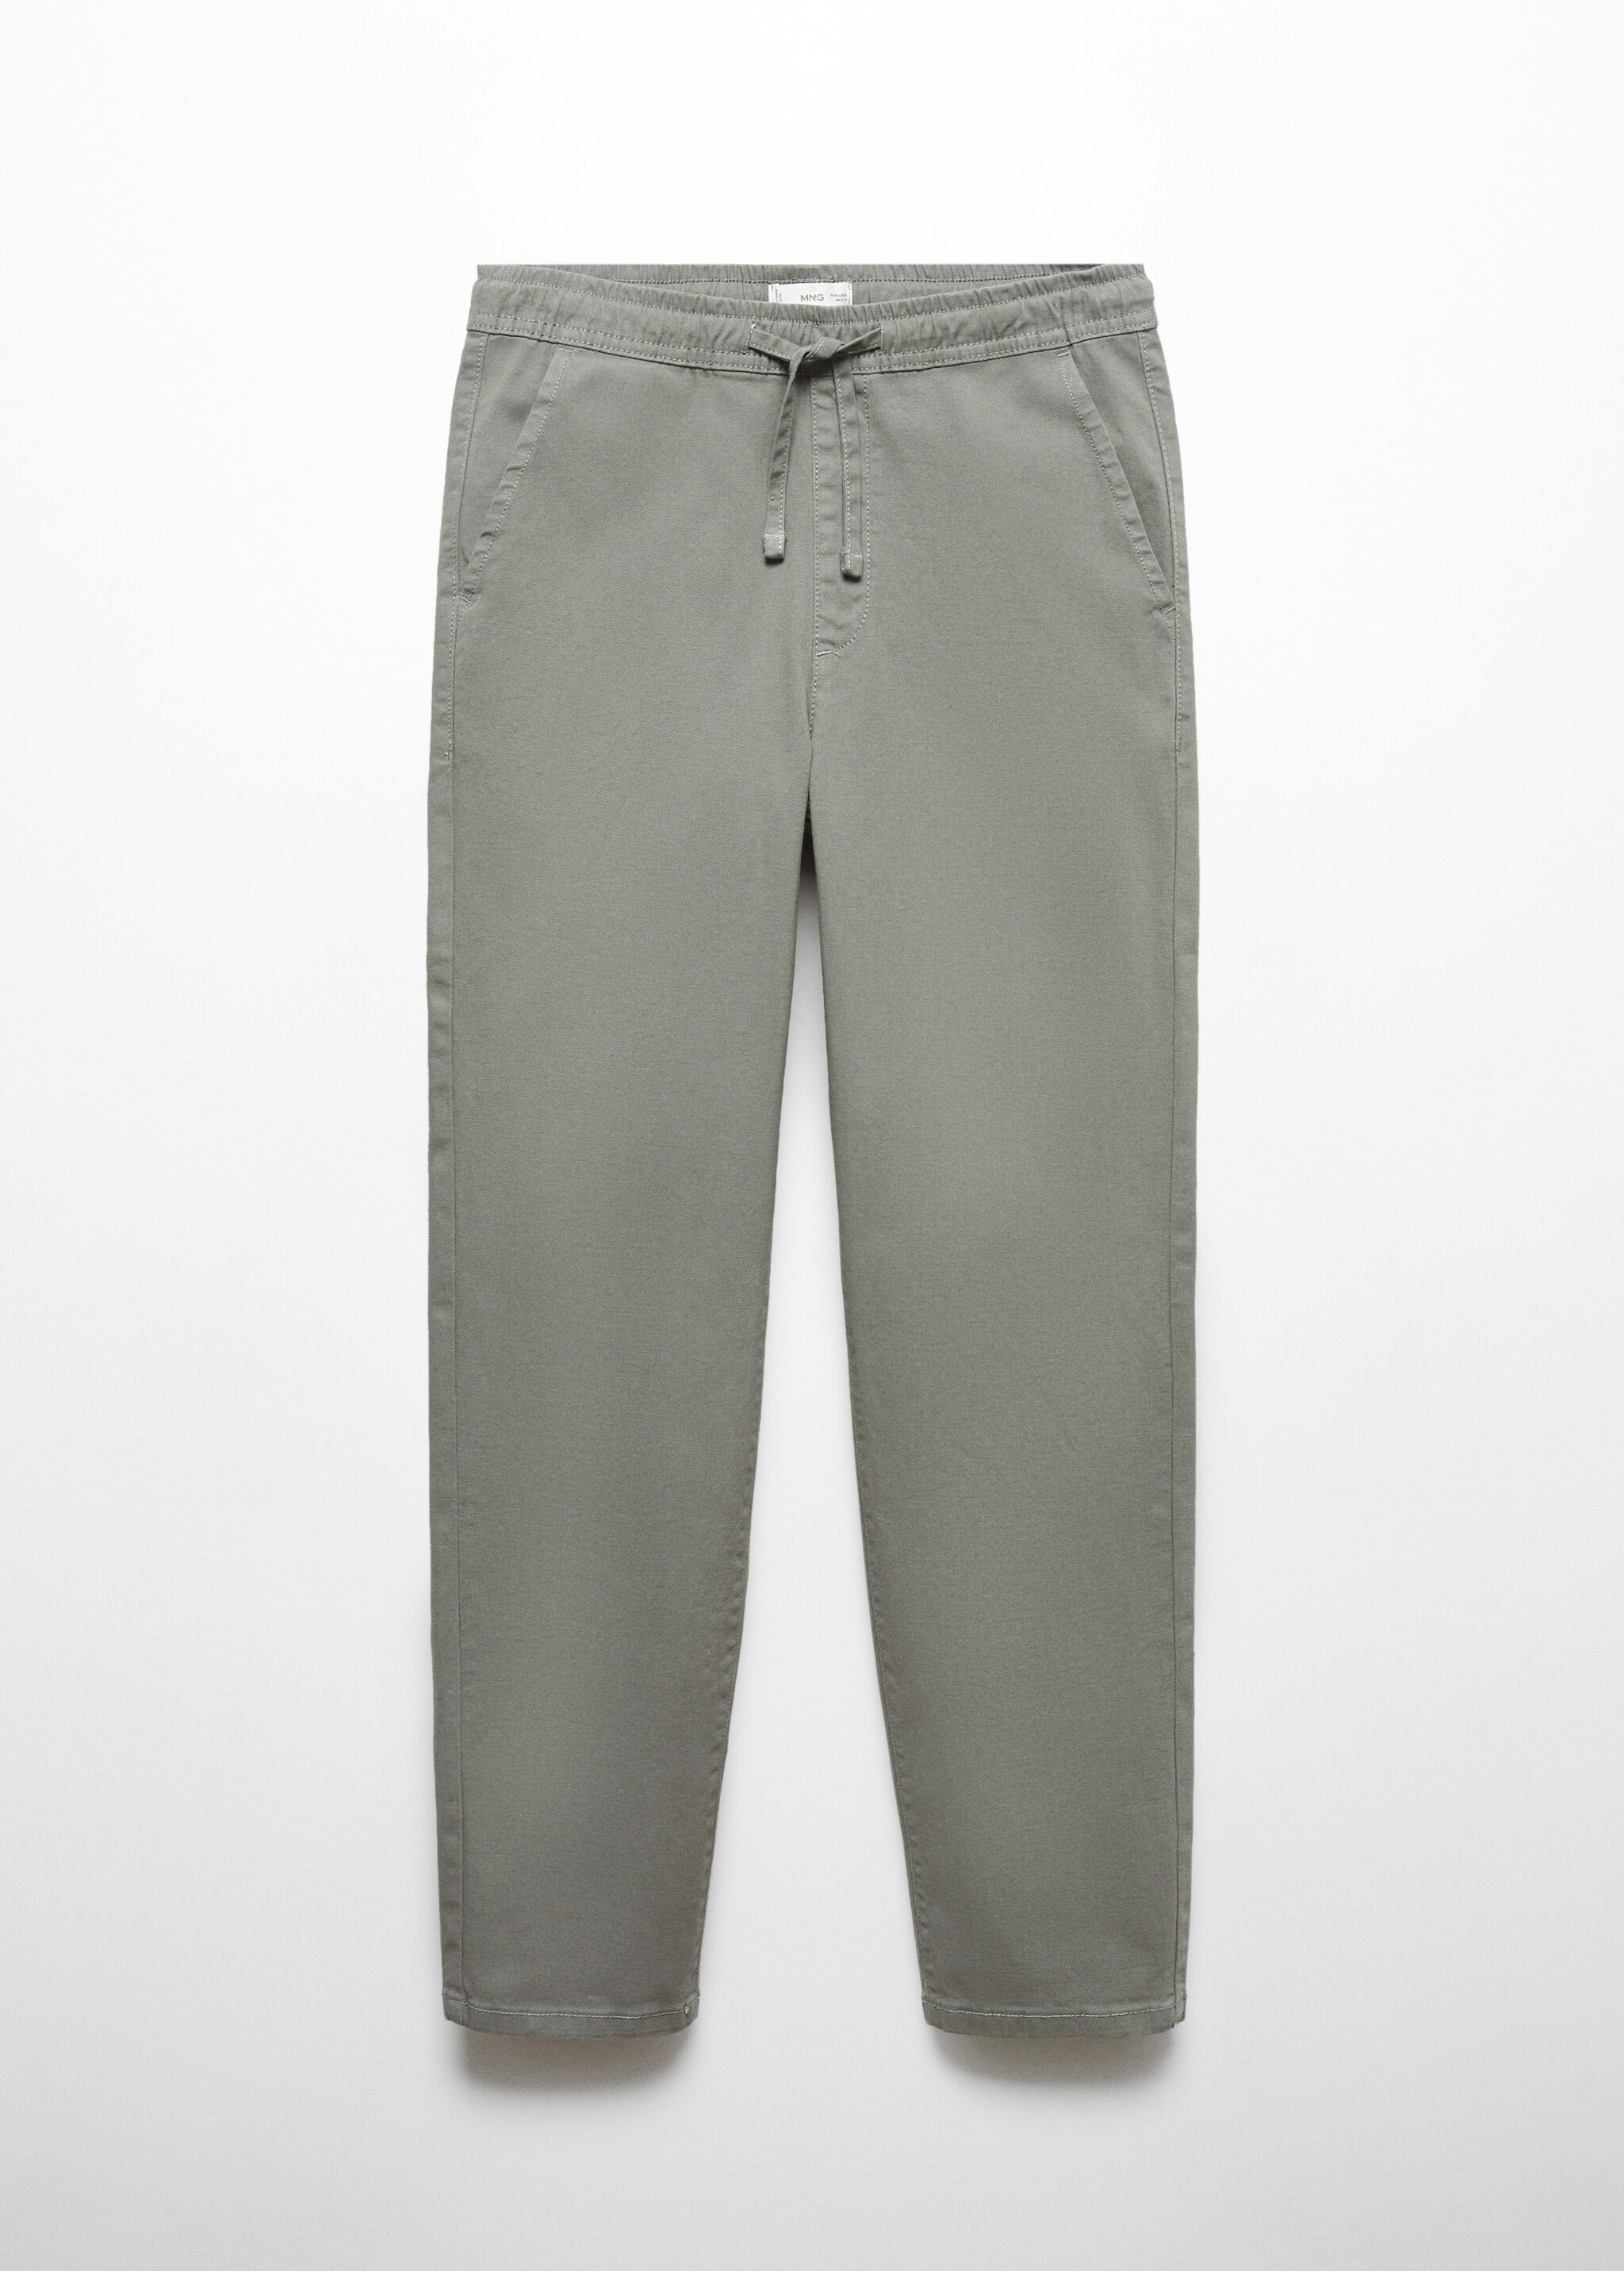 Прямые брюки с эластичным поясом - Изделие без модели